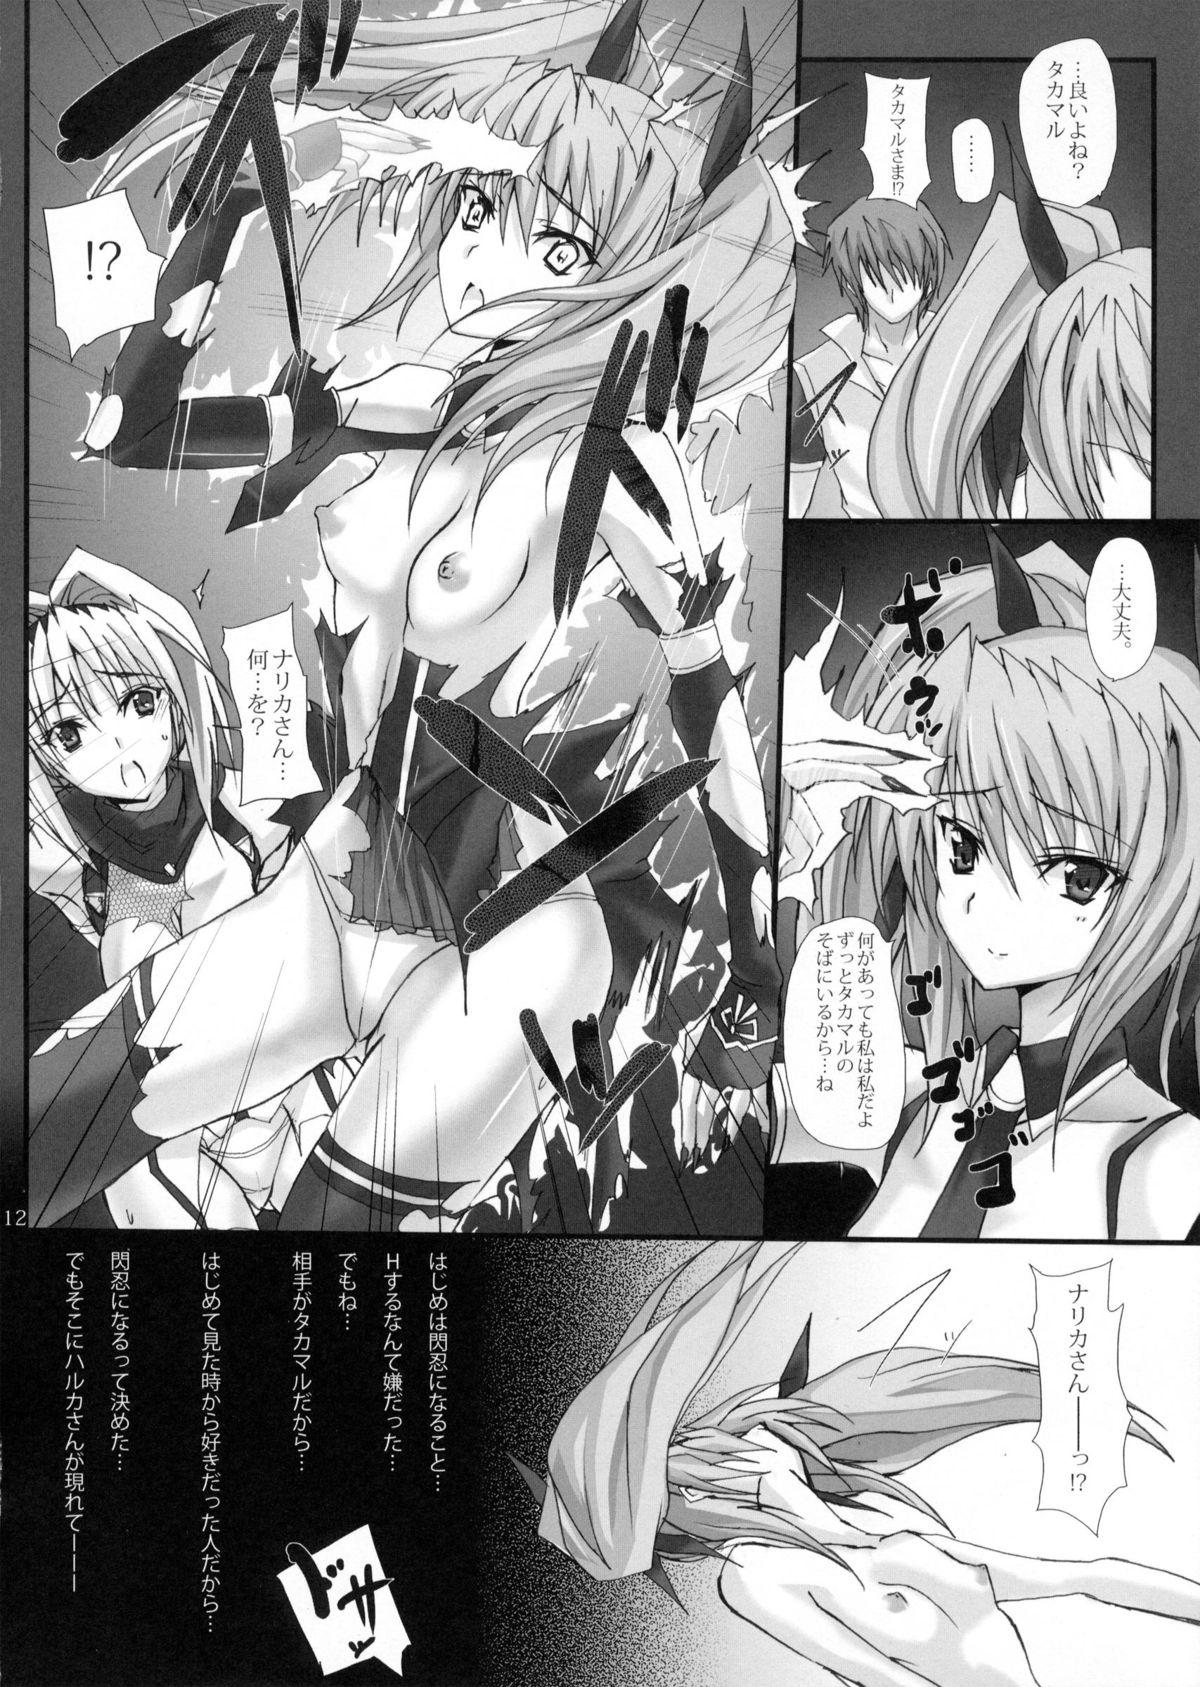 Exposed Yami wo Matoishi Homura wa Ono ga Mi wo Boukyaku no Gokuen e - Beat blades haruka Ass To Mouth - Page 11